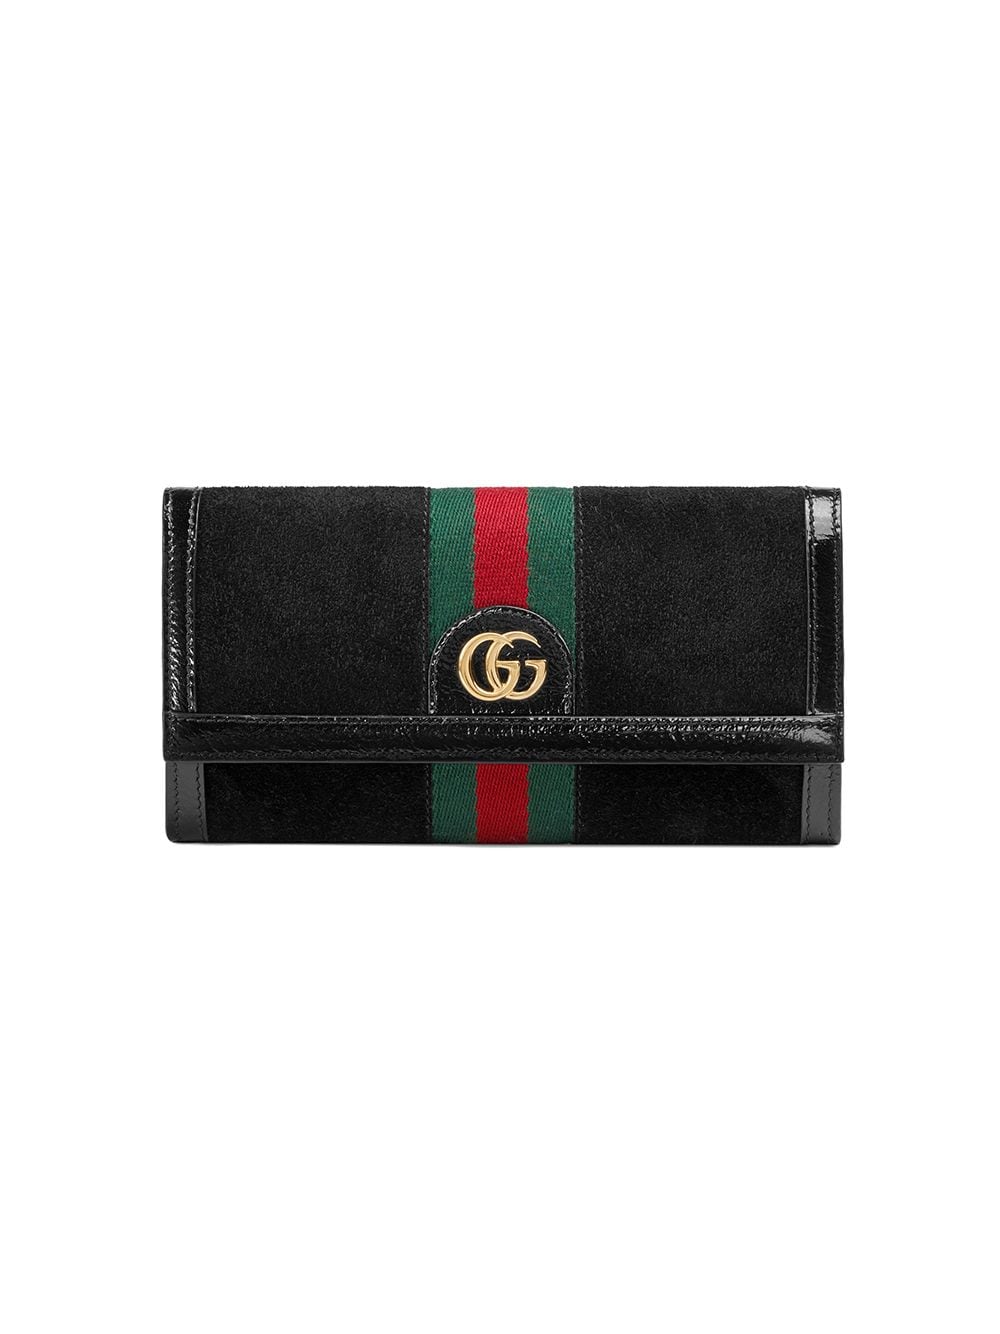 фото Gucci континентальный кошелек 'Ophidia'